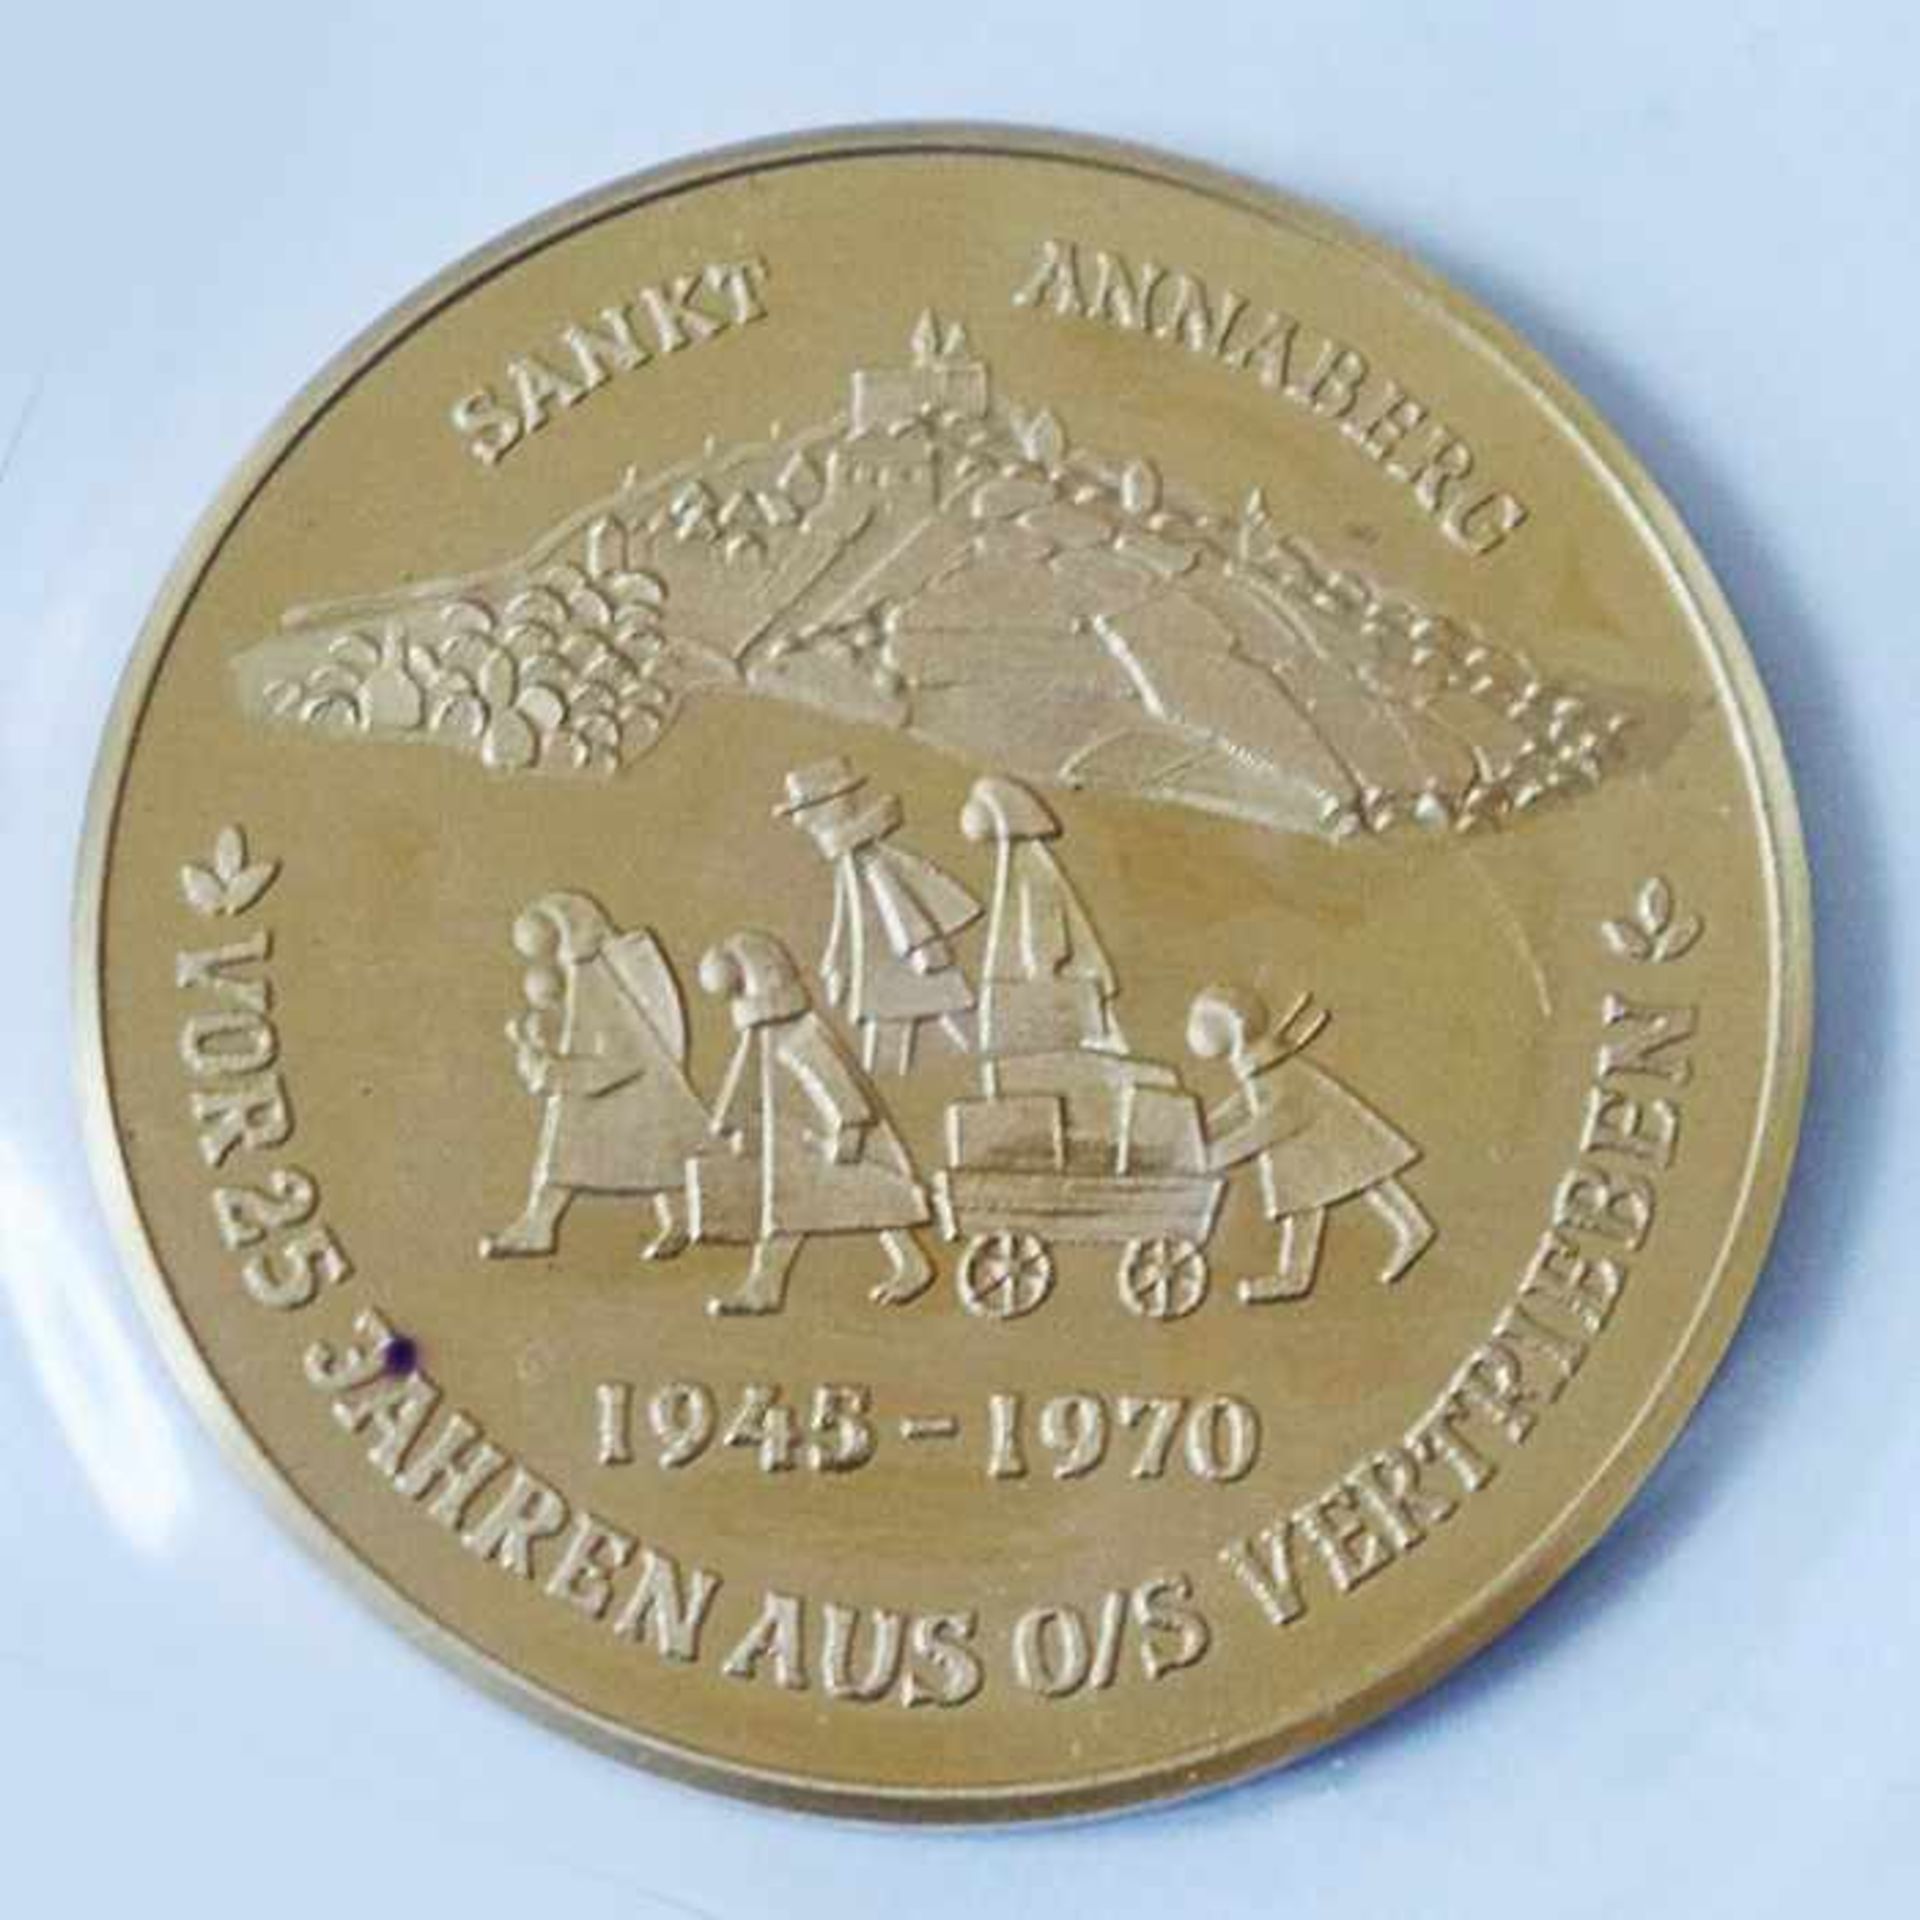 Gold - Medaille Polen 1970gest. 986, Sankt Annaberg - vor 25 Jahren aus O/S vertrieben, D 26mm, G - Image 4 of 4